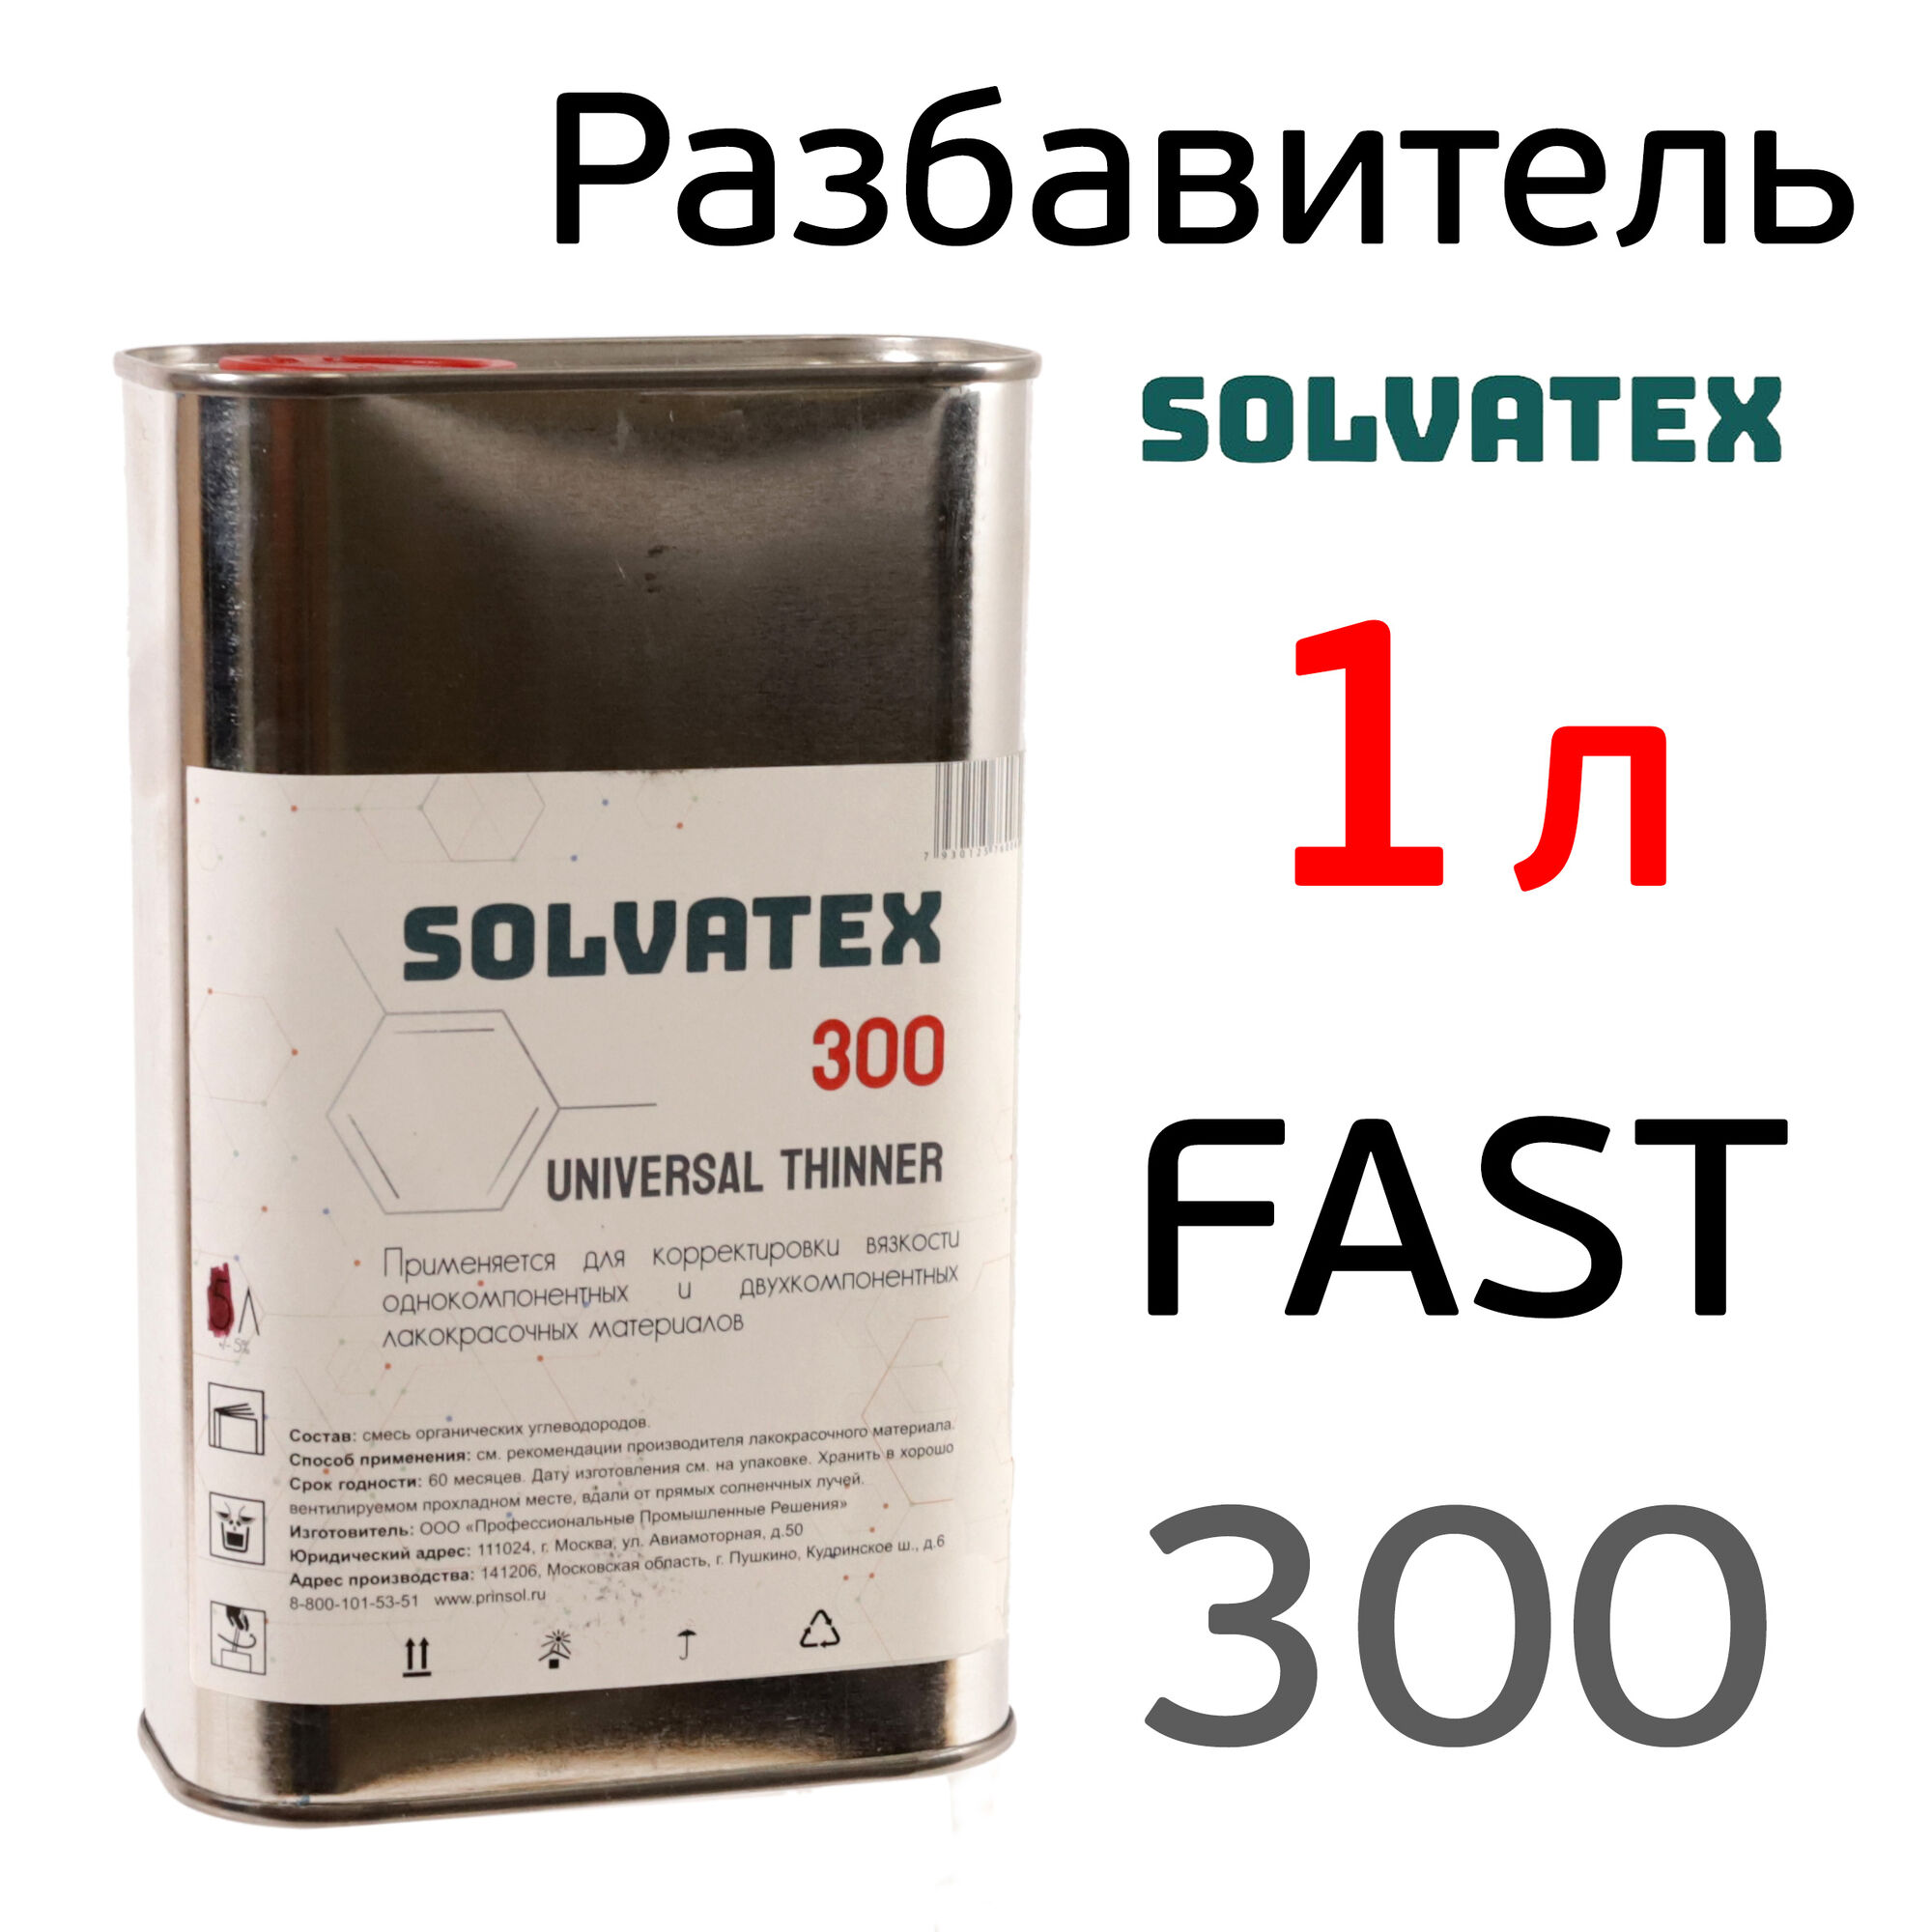 Разбавитель Solvatex 300 (1л) Fast акриловый быстрый (Glasurit 352-50) универсальный